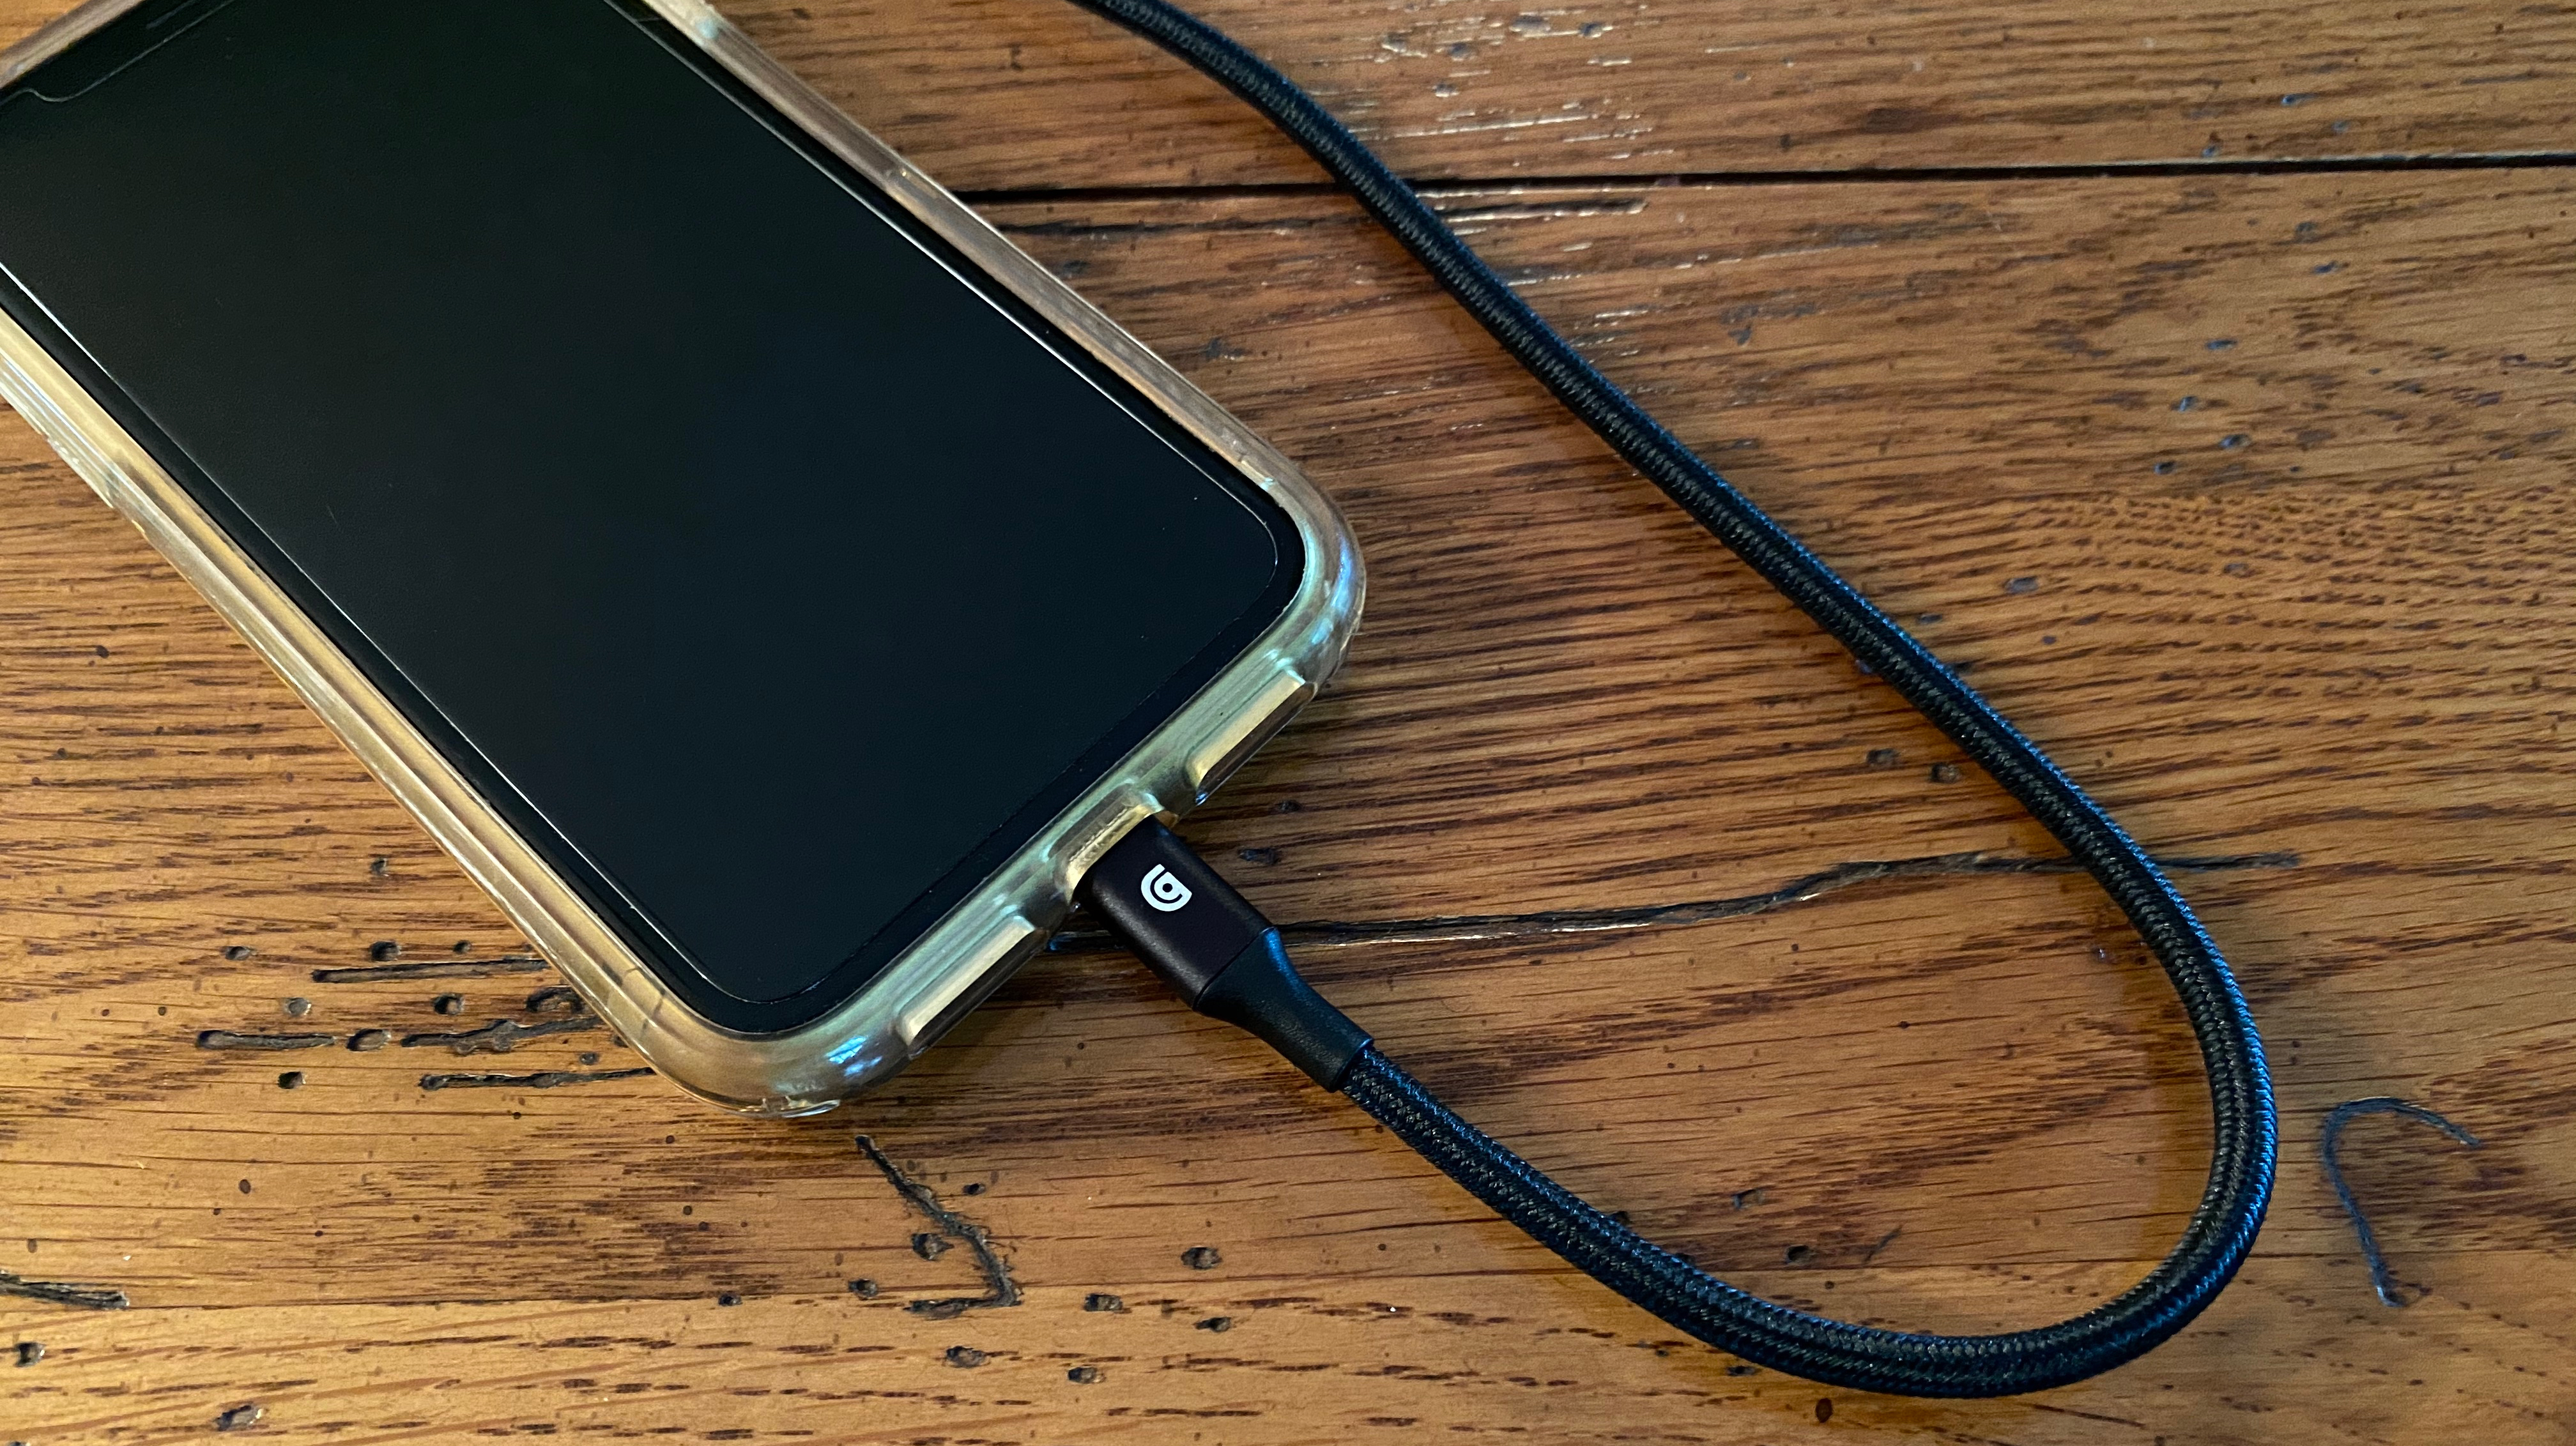 El cable USB-C a Lightning trenzado del iPhone 12 aparece en más